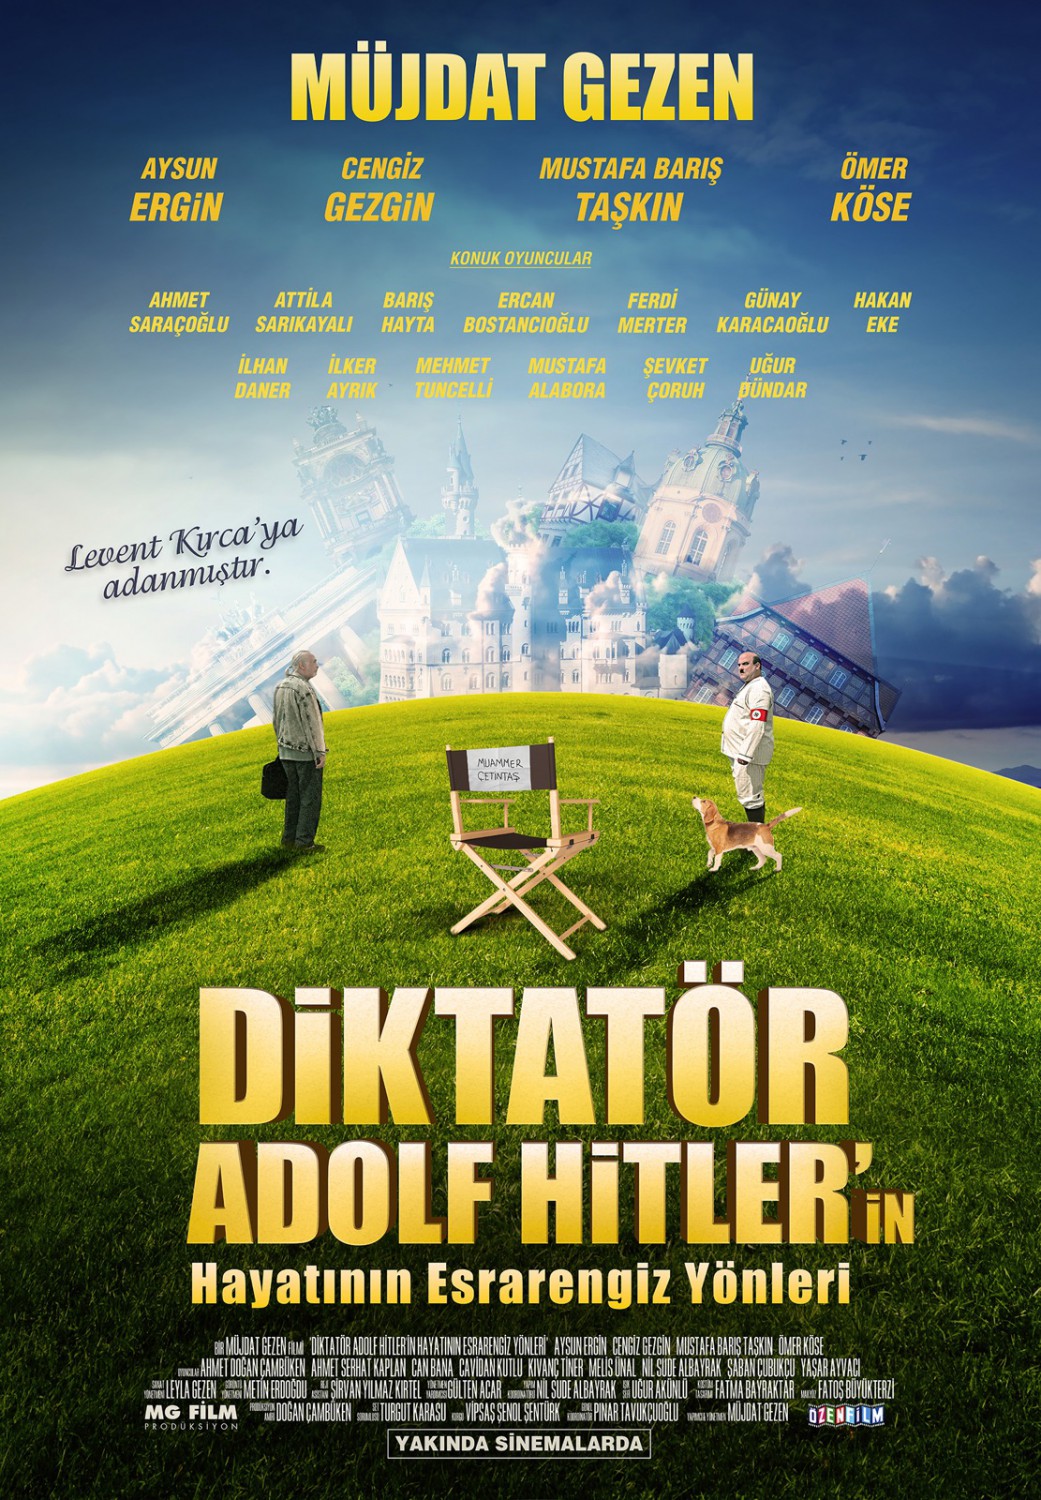 Extra Large Movie Poster Image for Diktatör Adolf Hitler' in Hayatının Esrarengiz Yönleri (#2 of 2)